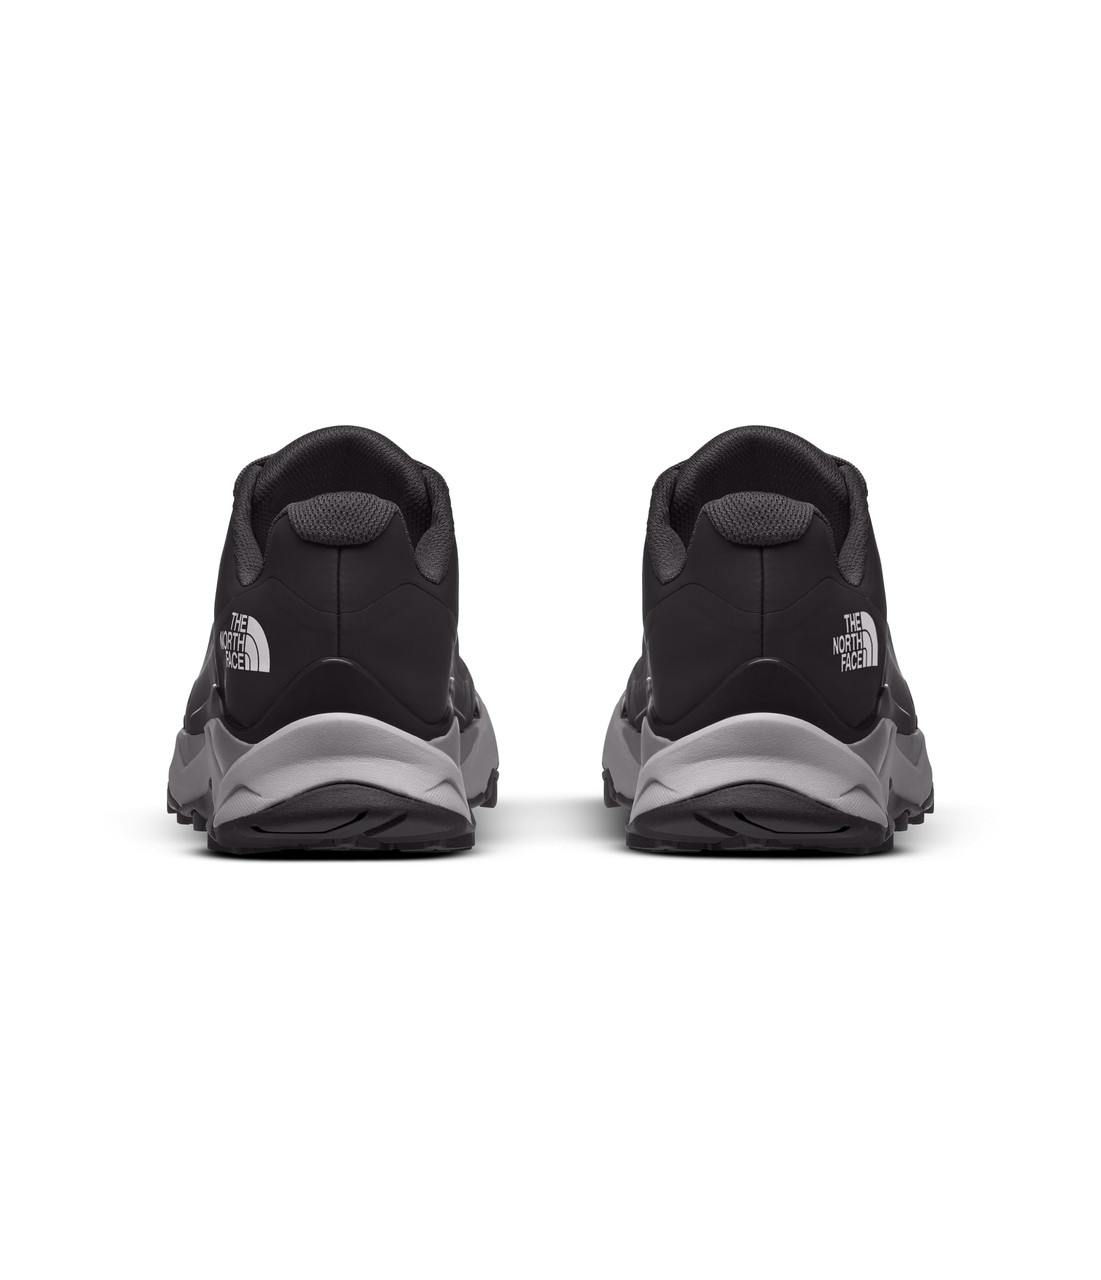 Vectiv Exploris Futurelight Light Trail Shoes TNF Black/Meld Grey